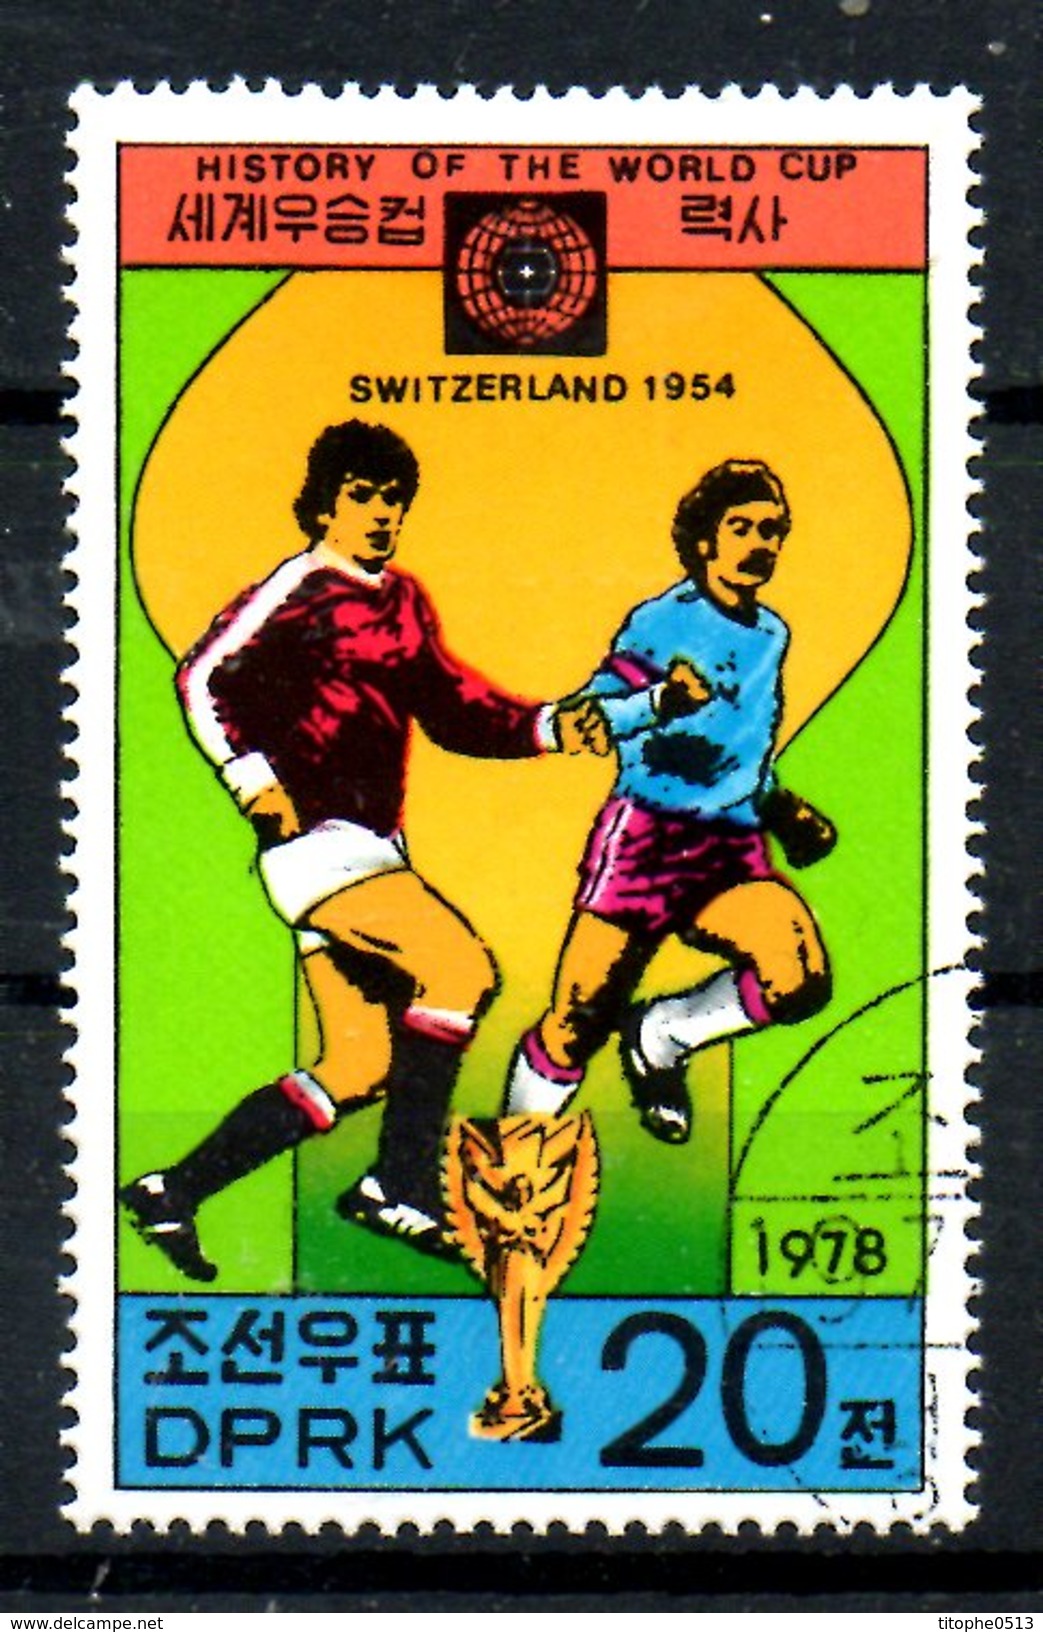 COREE DU NORD. N°1489E Oblitéré De 1978. Suisse'54. - 1954 – Schweiz